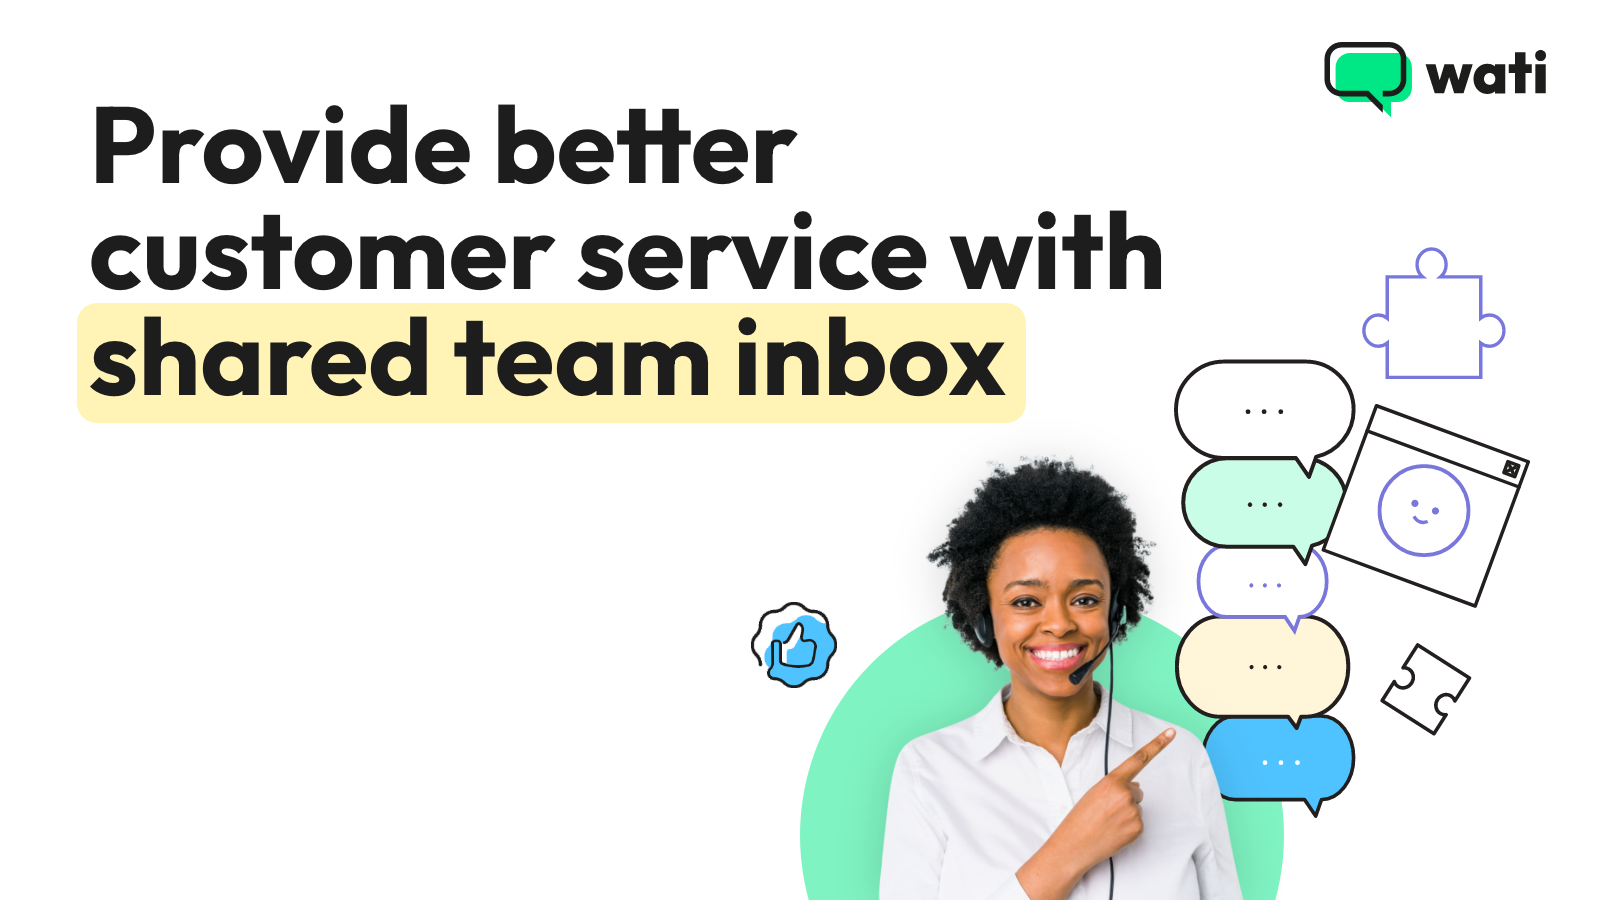 Fournissez un meilleur service client avec une boîte de réception d'équipe partagée